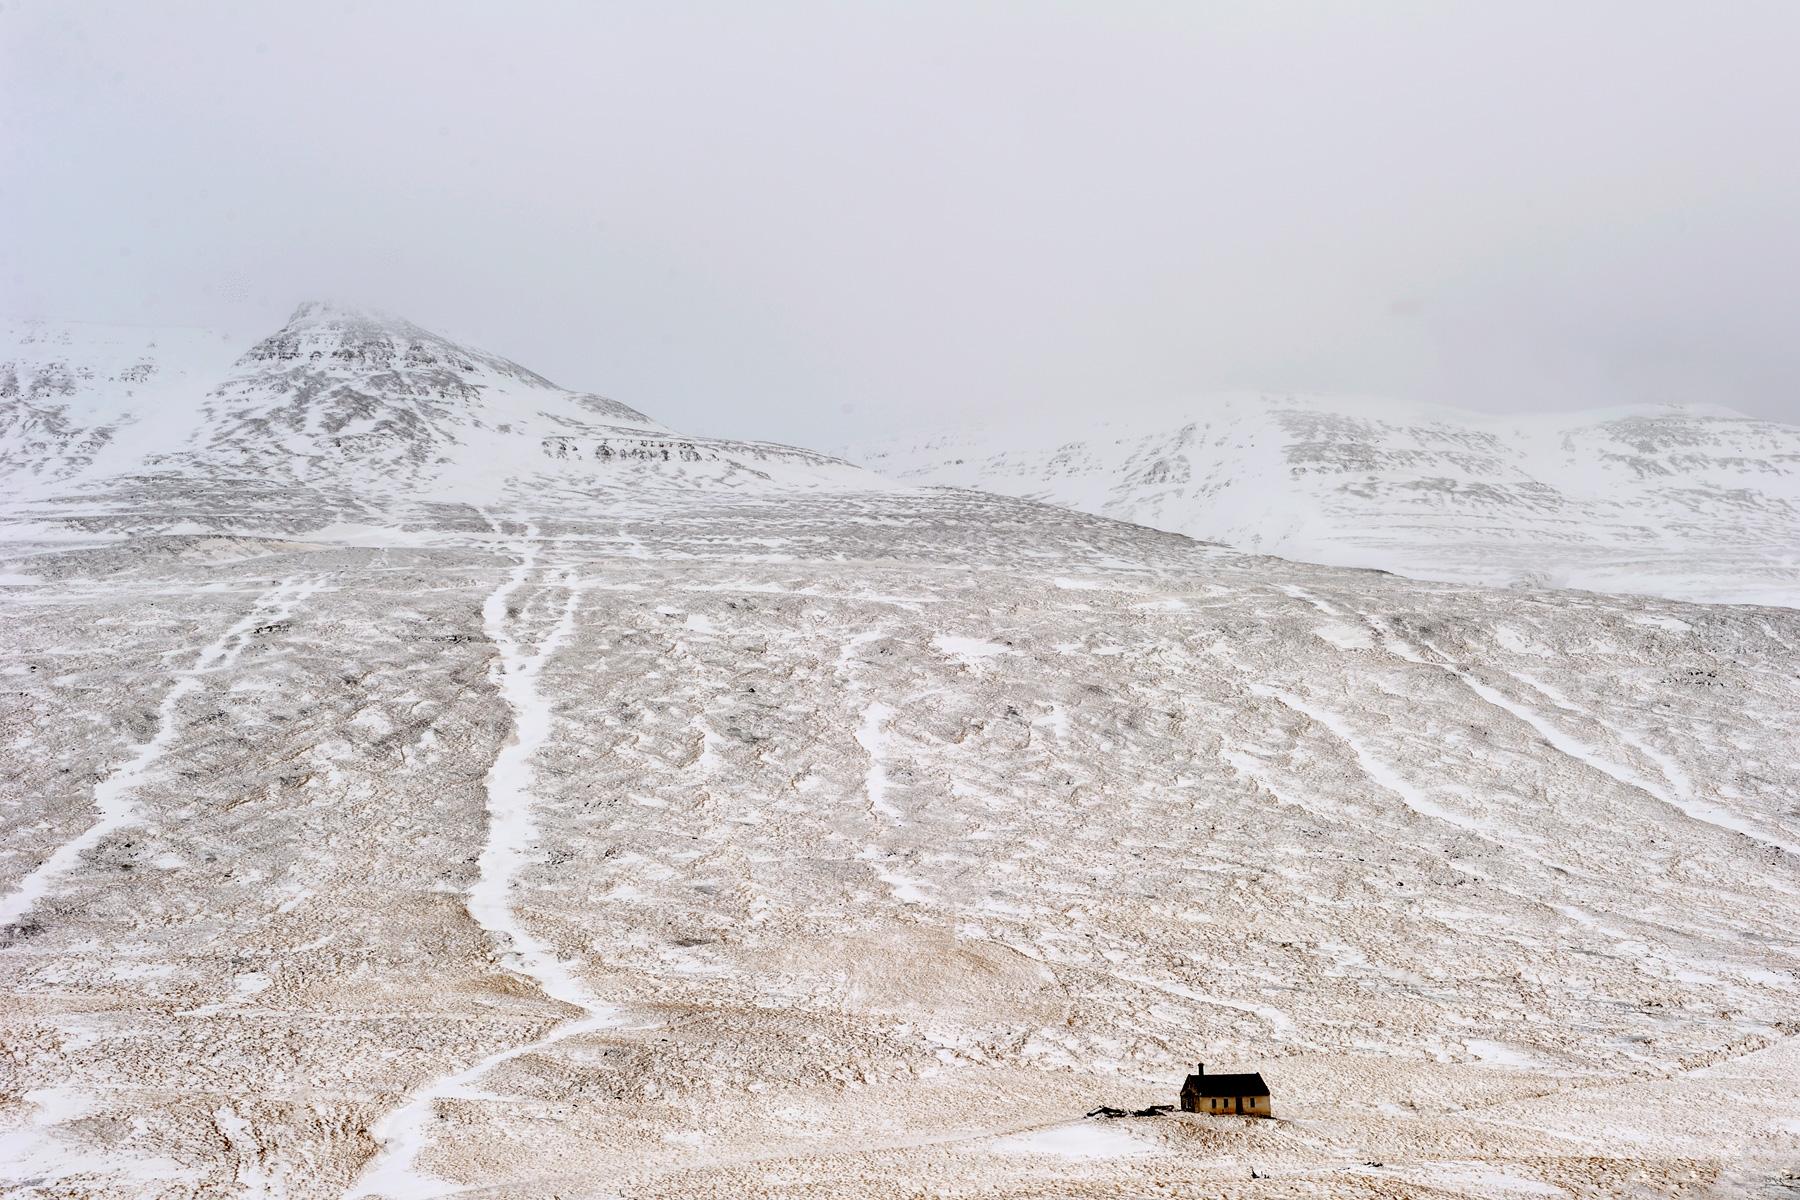 Islande - Ferme isolée dans un paysage enneigé dans la région de Blonduos